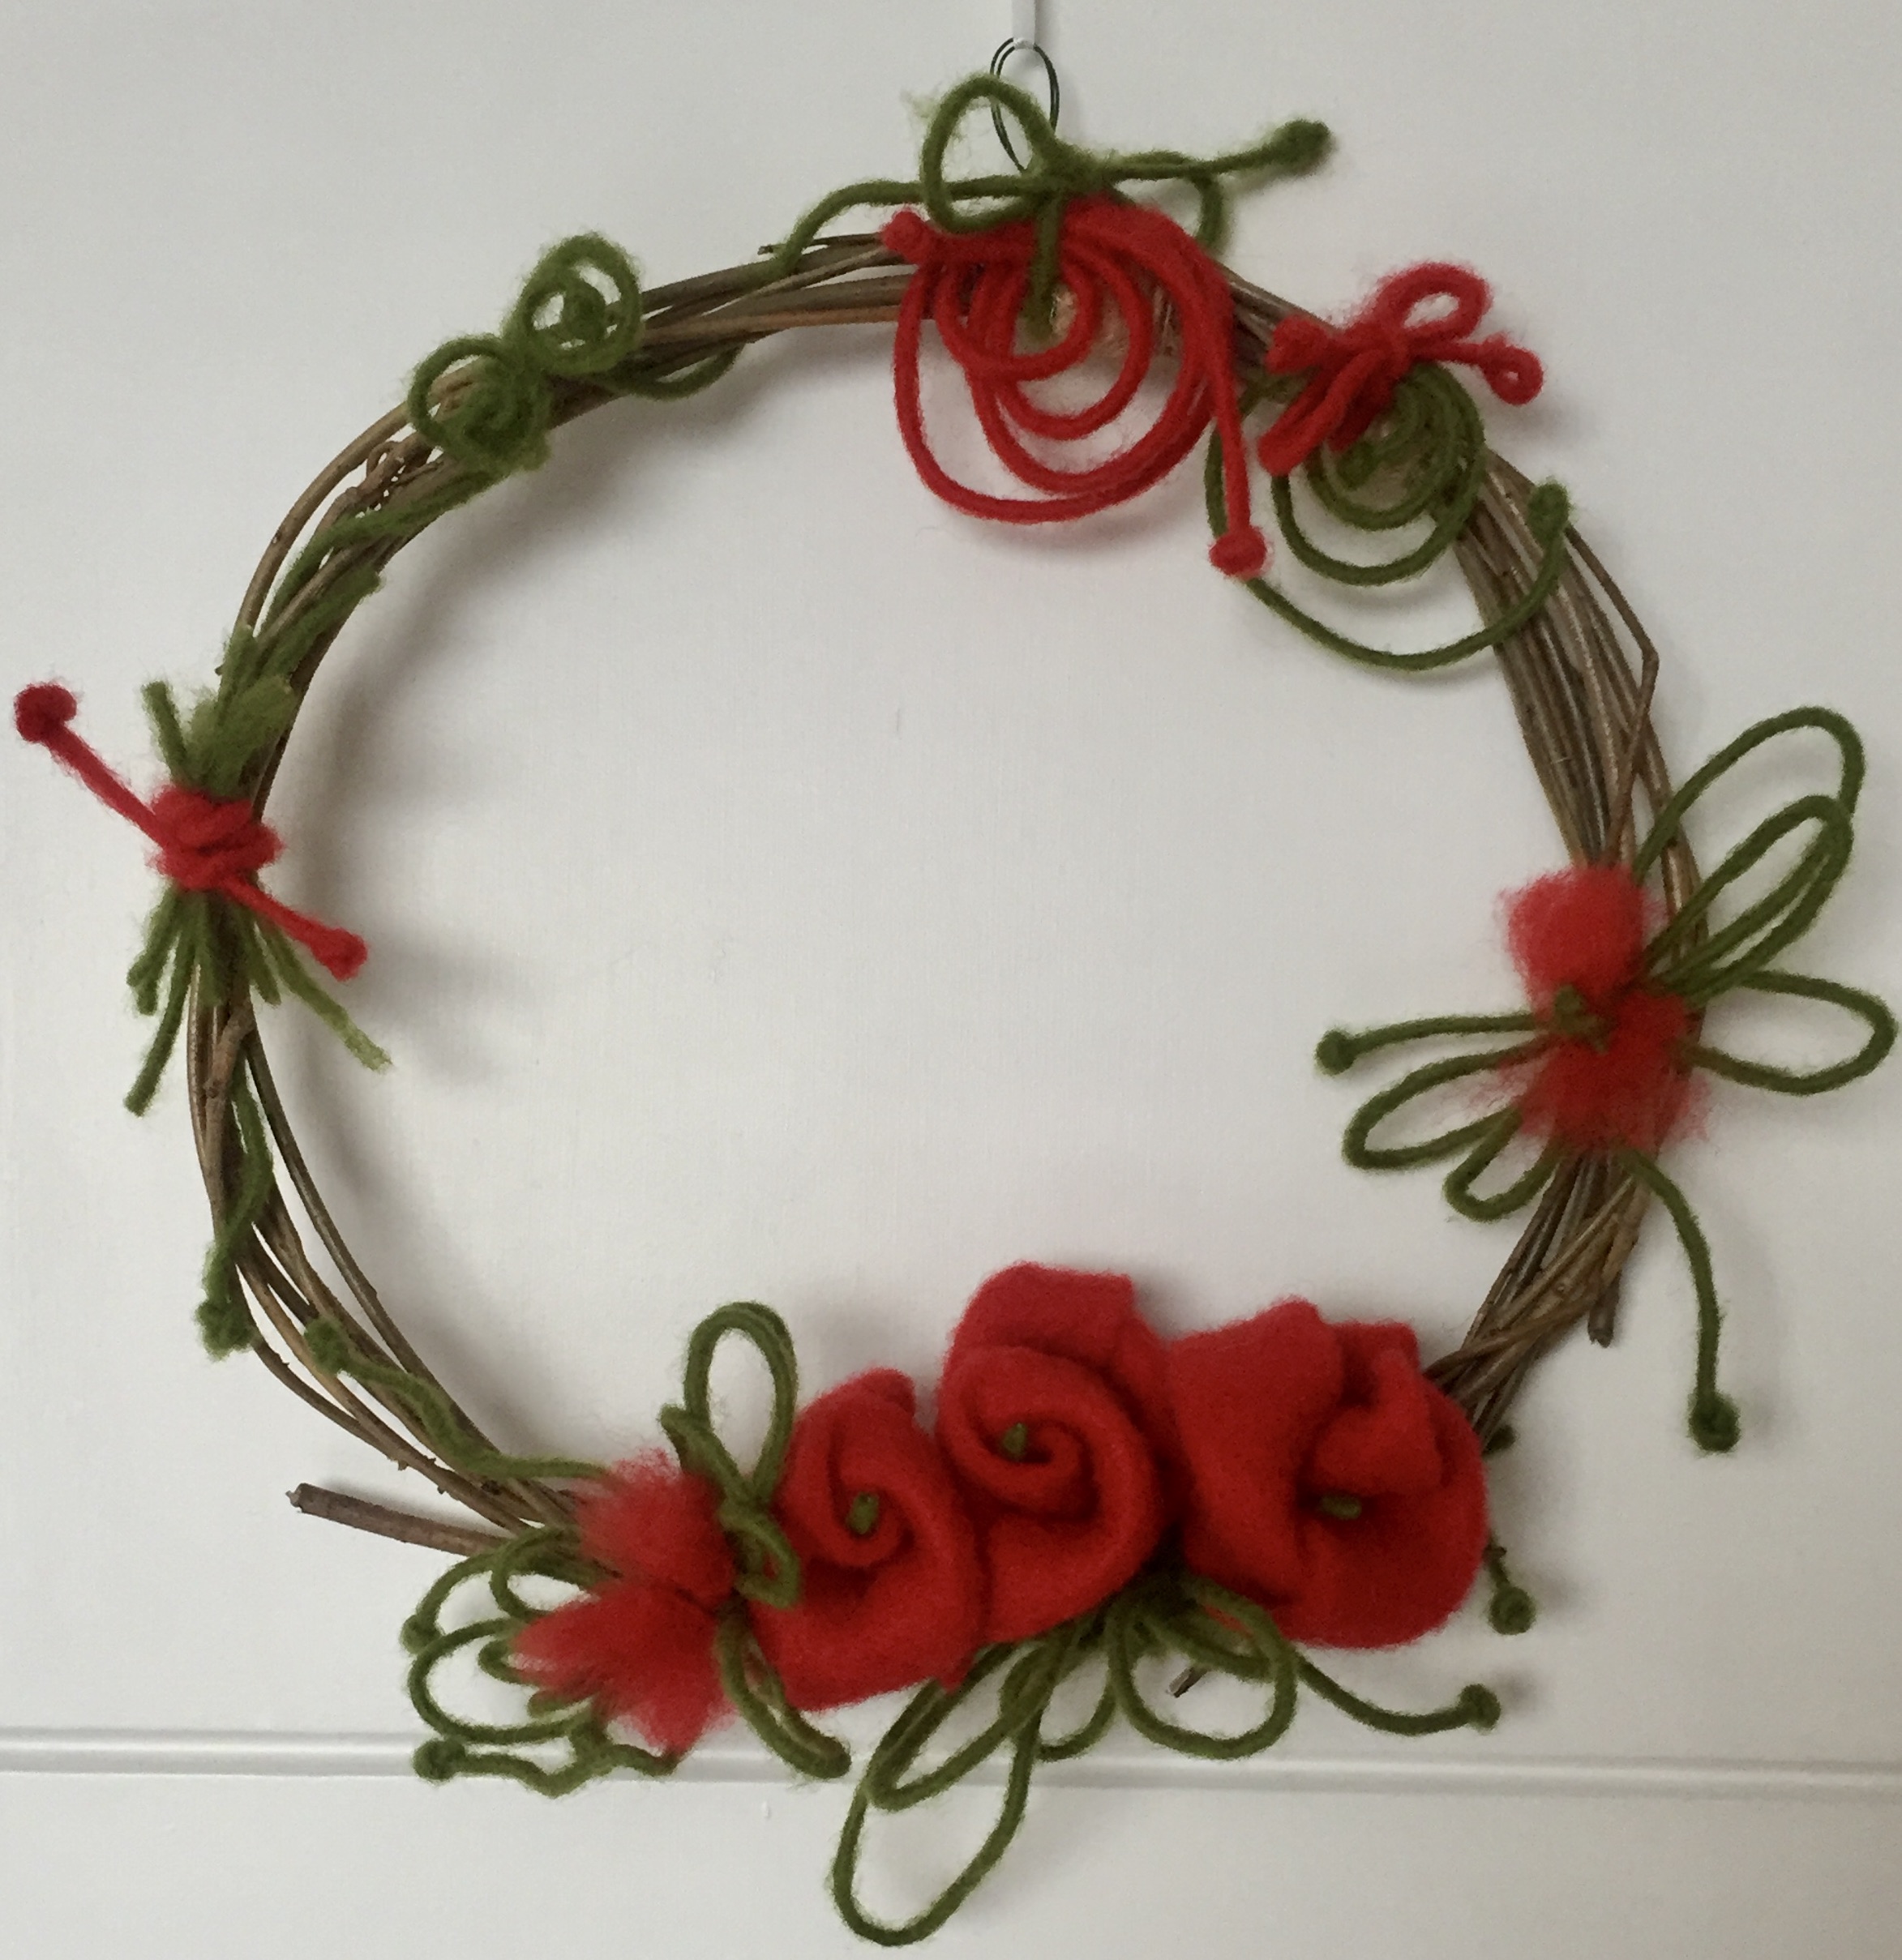 Handmade wreath with felt decoration